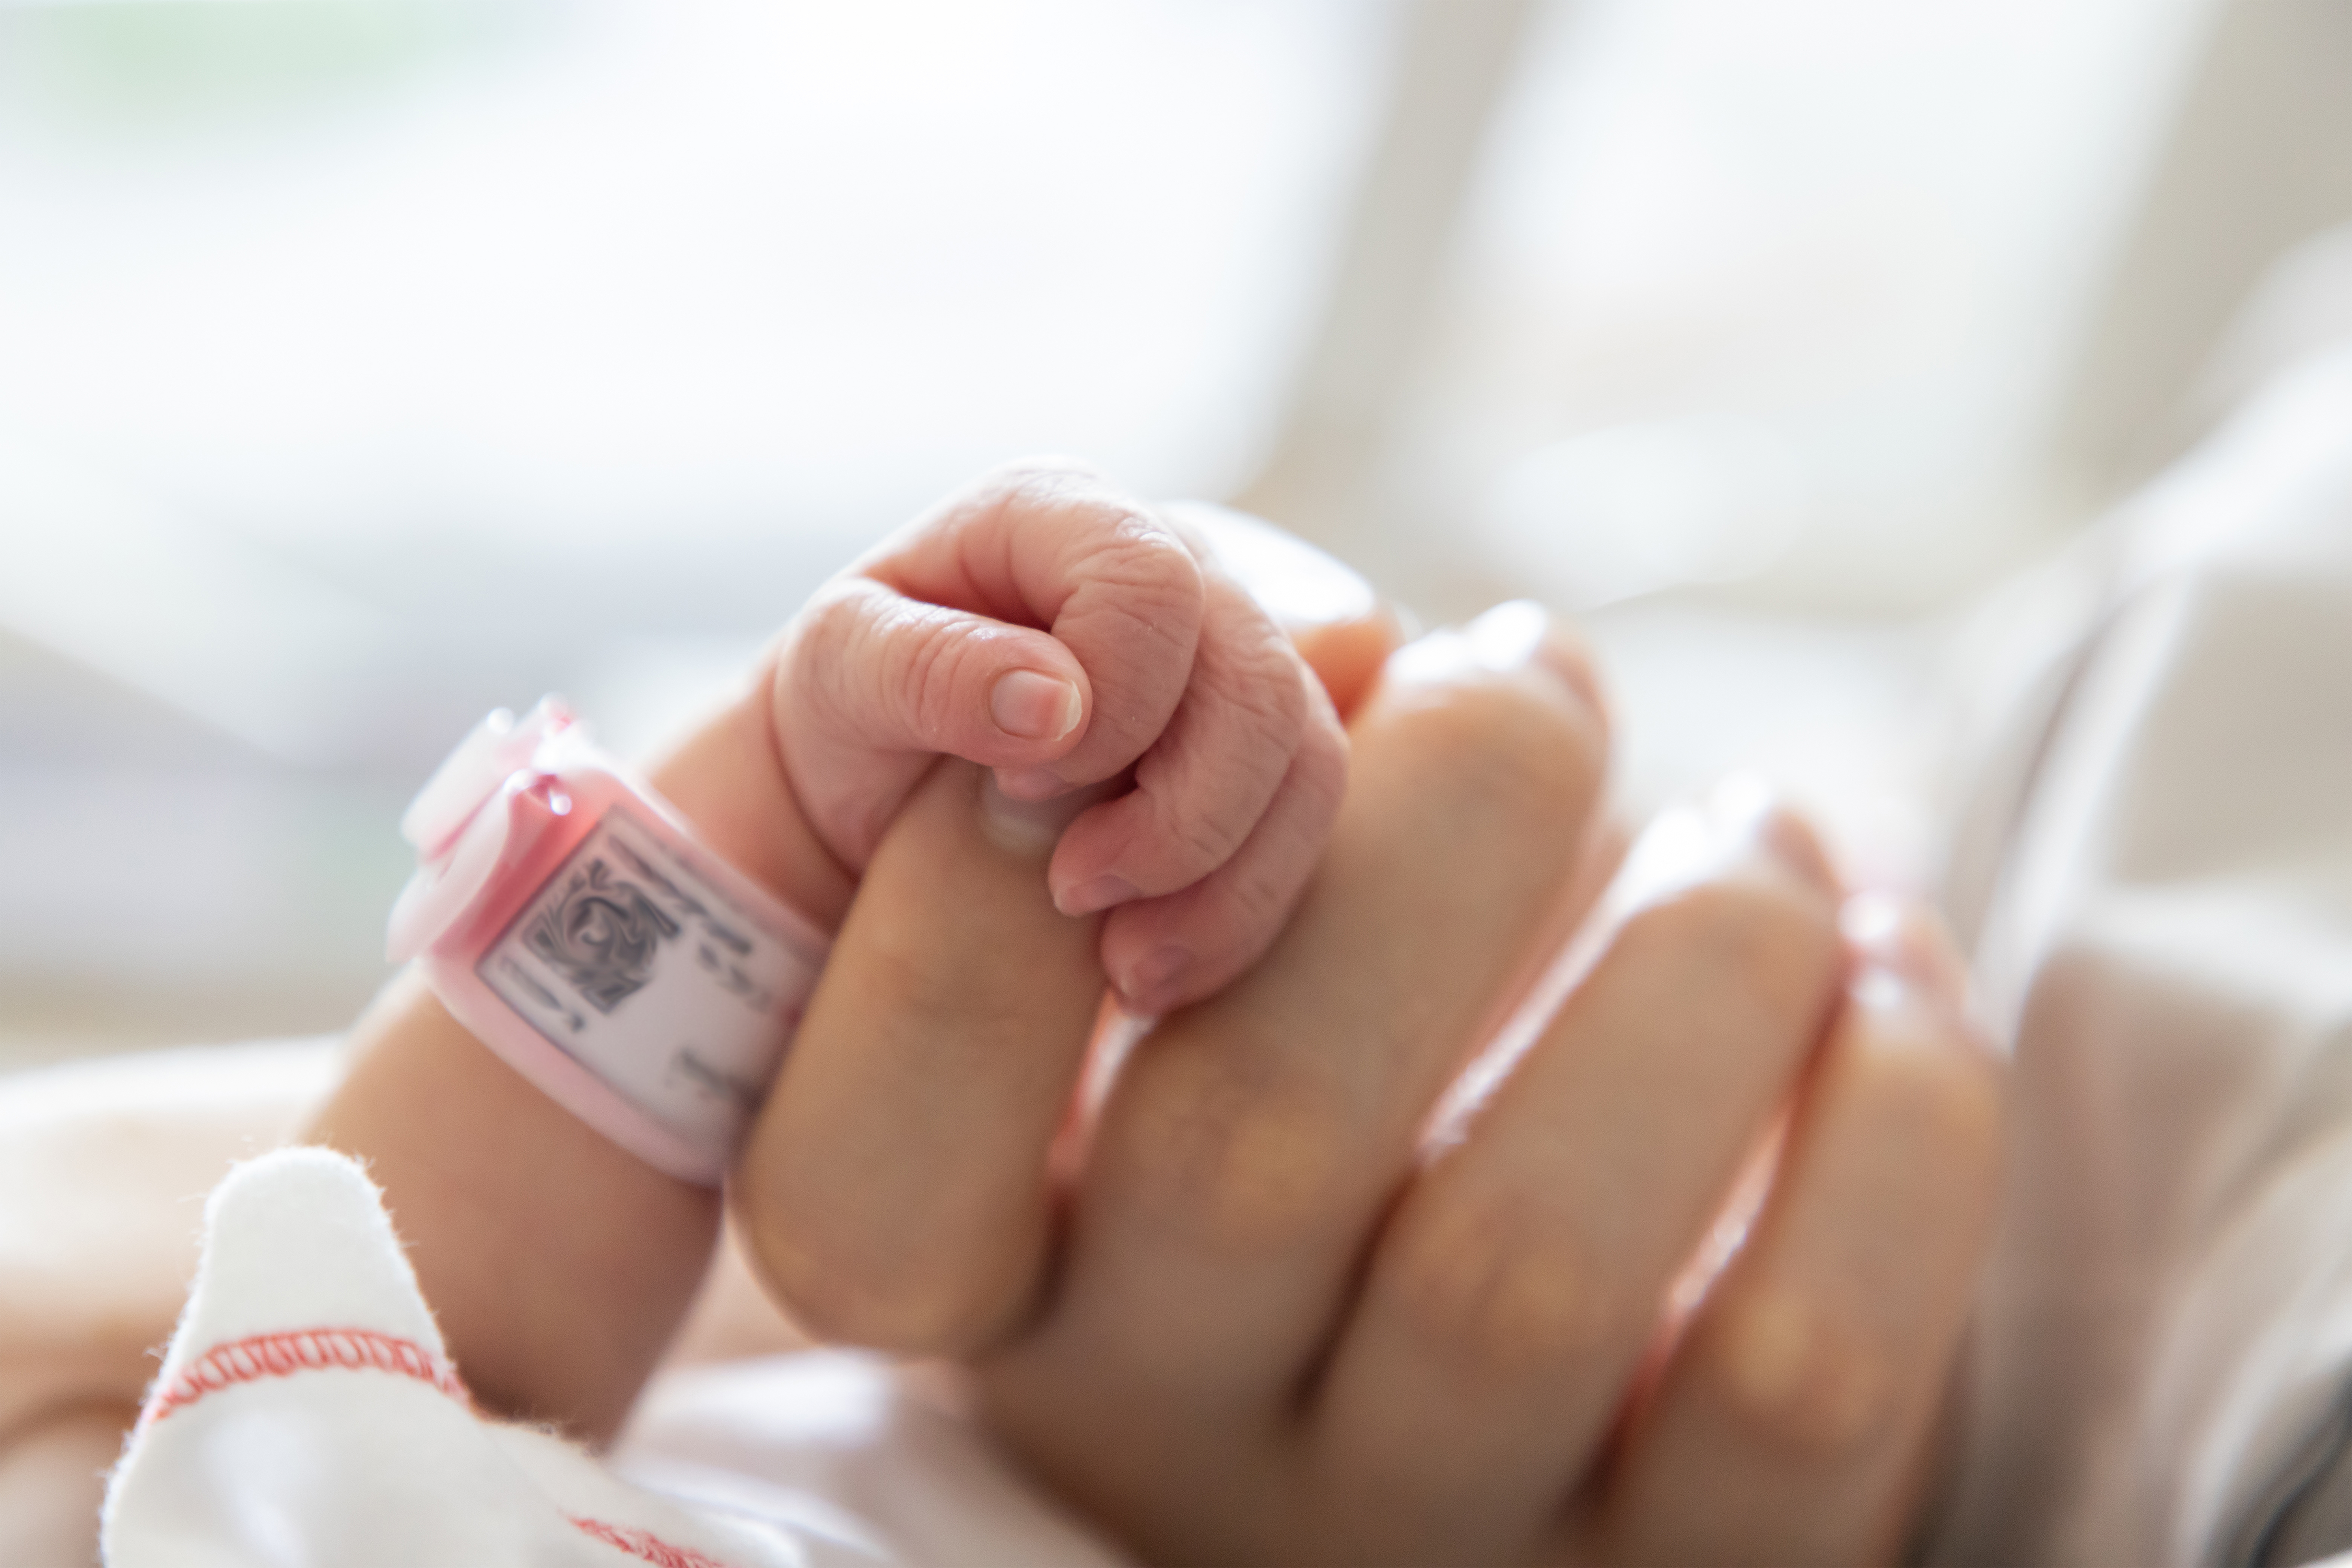 La main d'un bébé serrant le doigt d'une femme | Source : Shutterstock